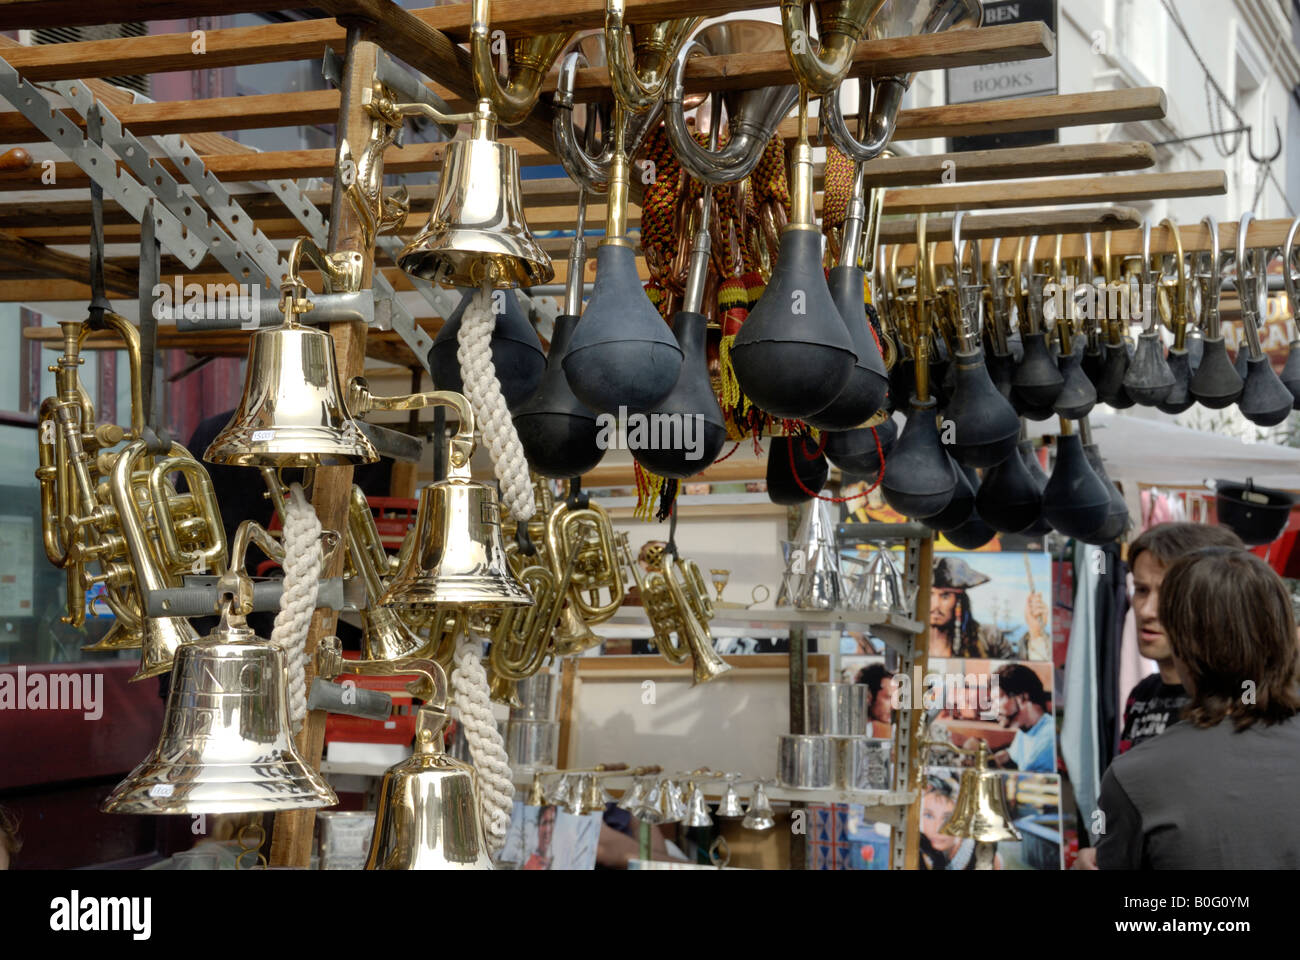 Cornes et cloches accroché au marché de Portobello road Banque D'Images